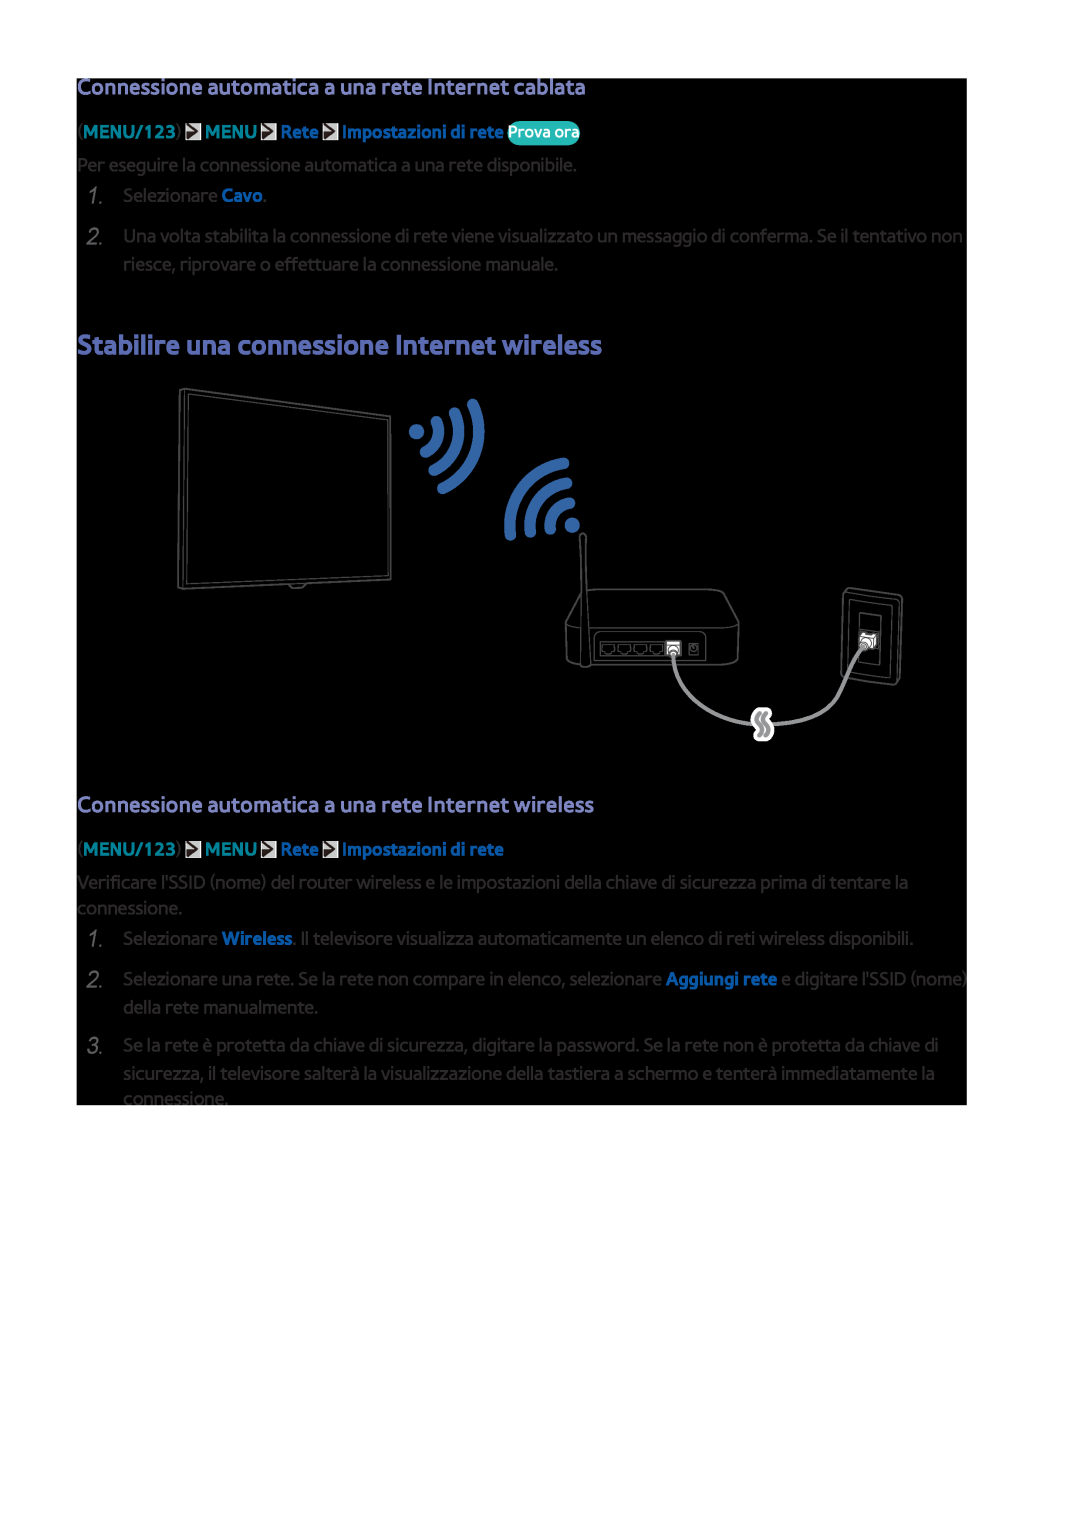 Samsung UE48JS9000LXXH Stabilire una connessione Internet wireless, Connessione automatica a una rete Internet cablata 